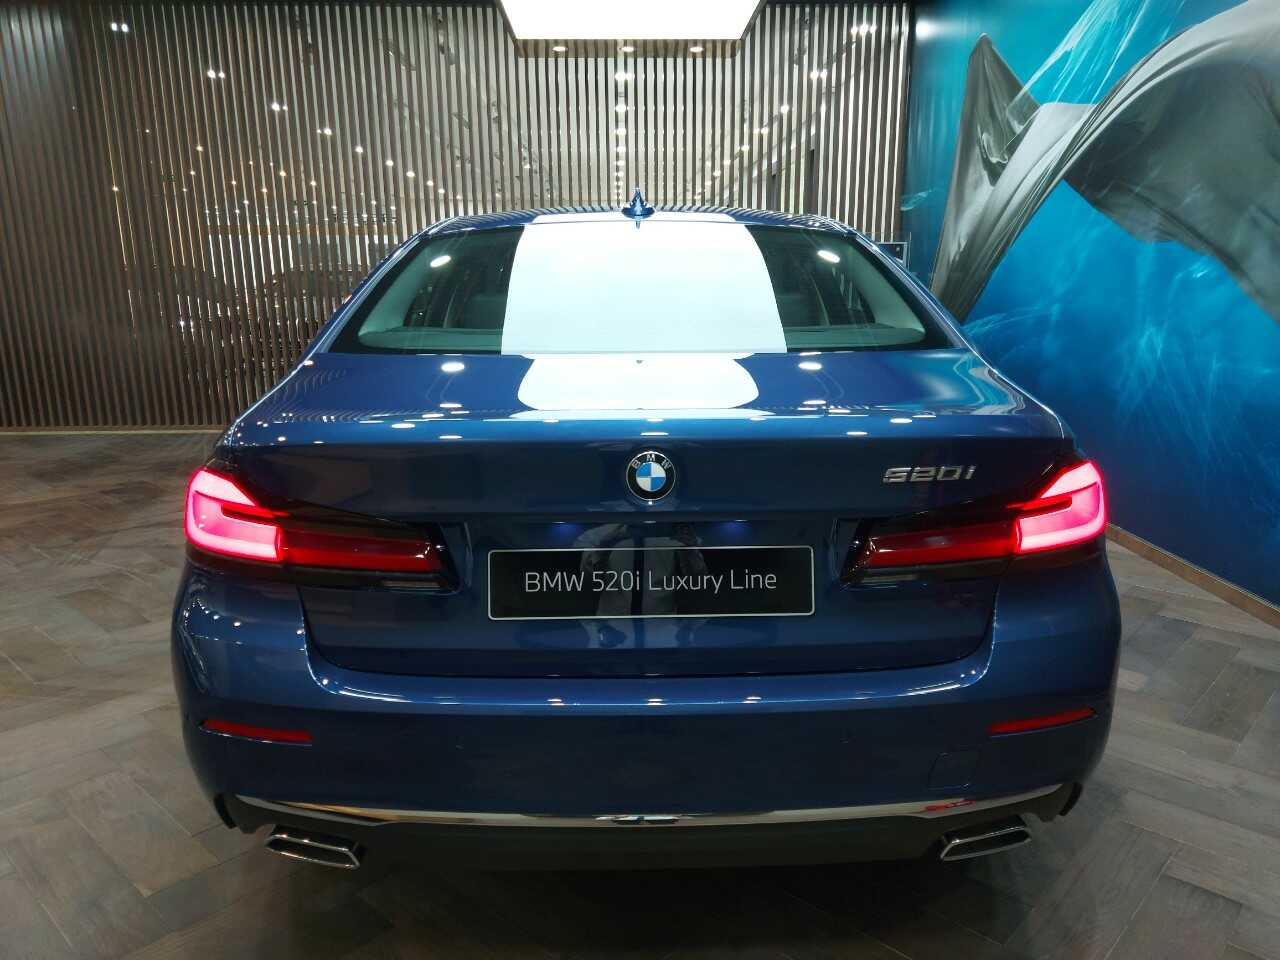 Phần đuôi của chiếc xe BMW 520i Luxury Line 2021.